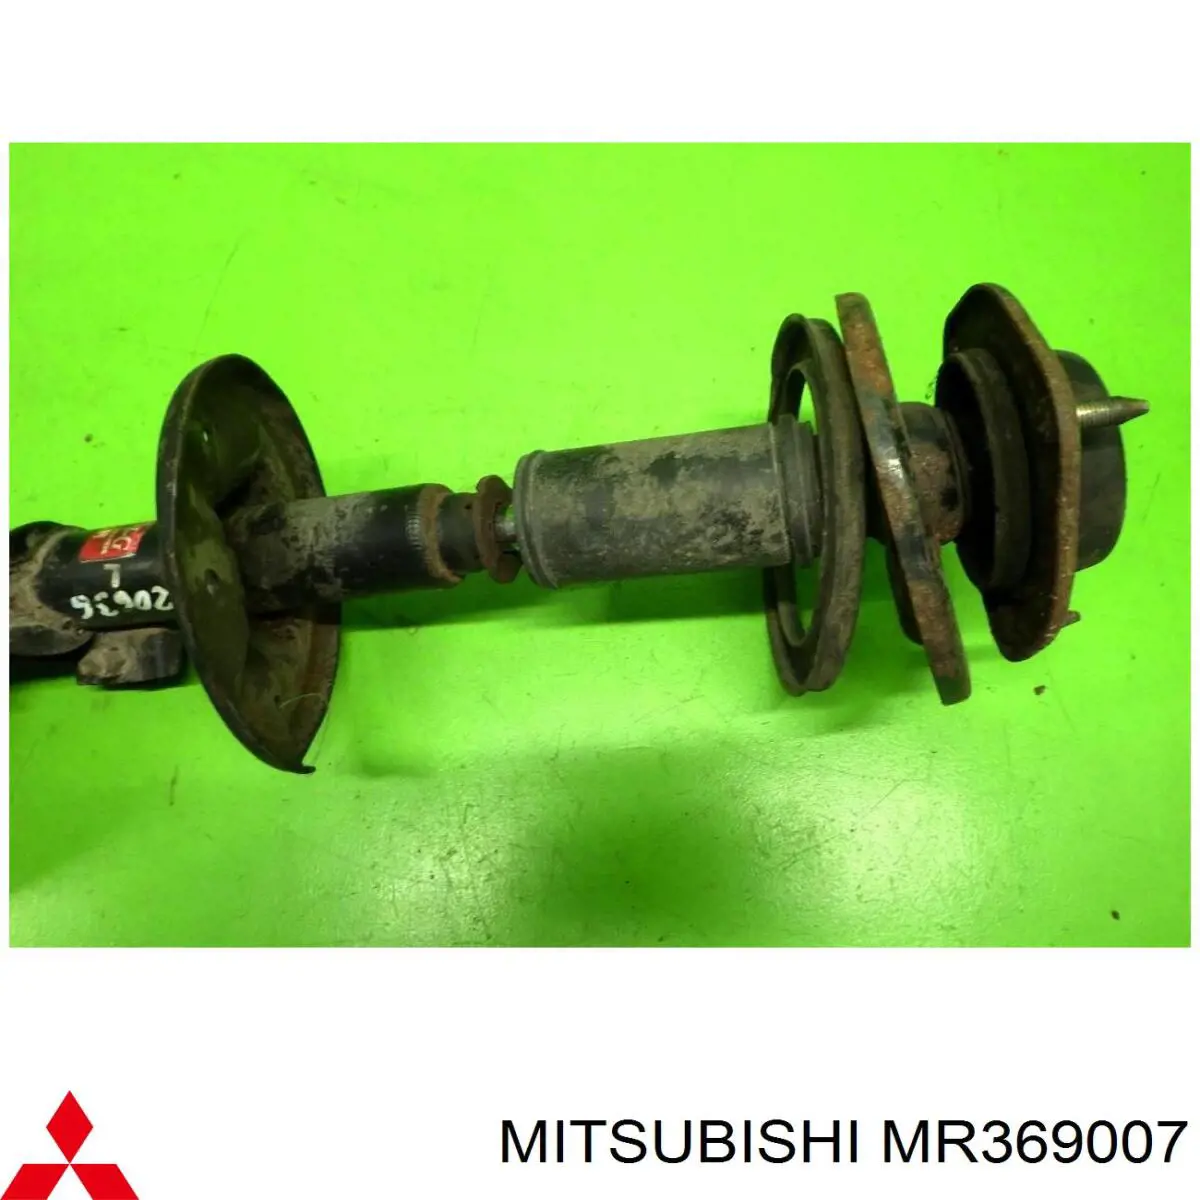 MR369007 Mitsubishi amortiguador delantero izquierdo